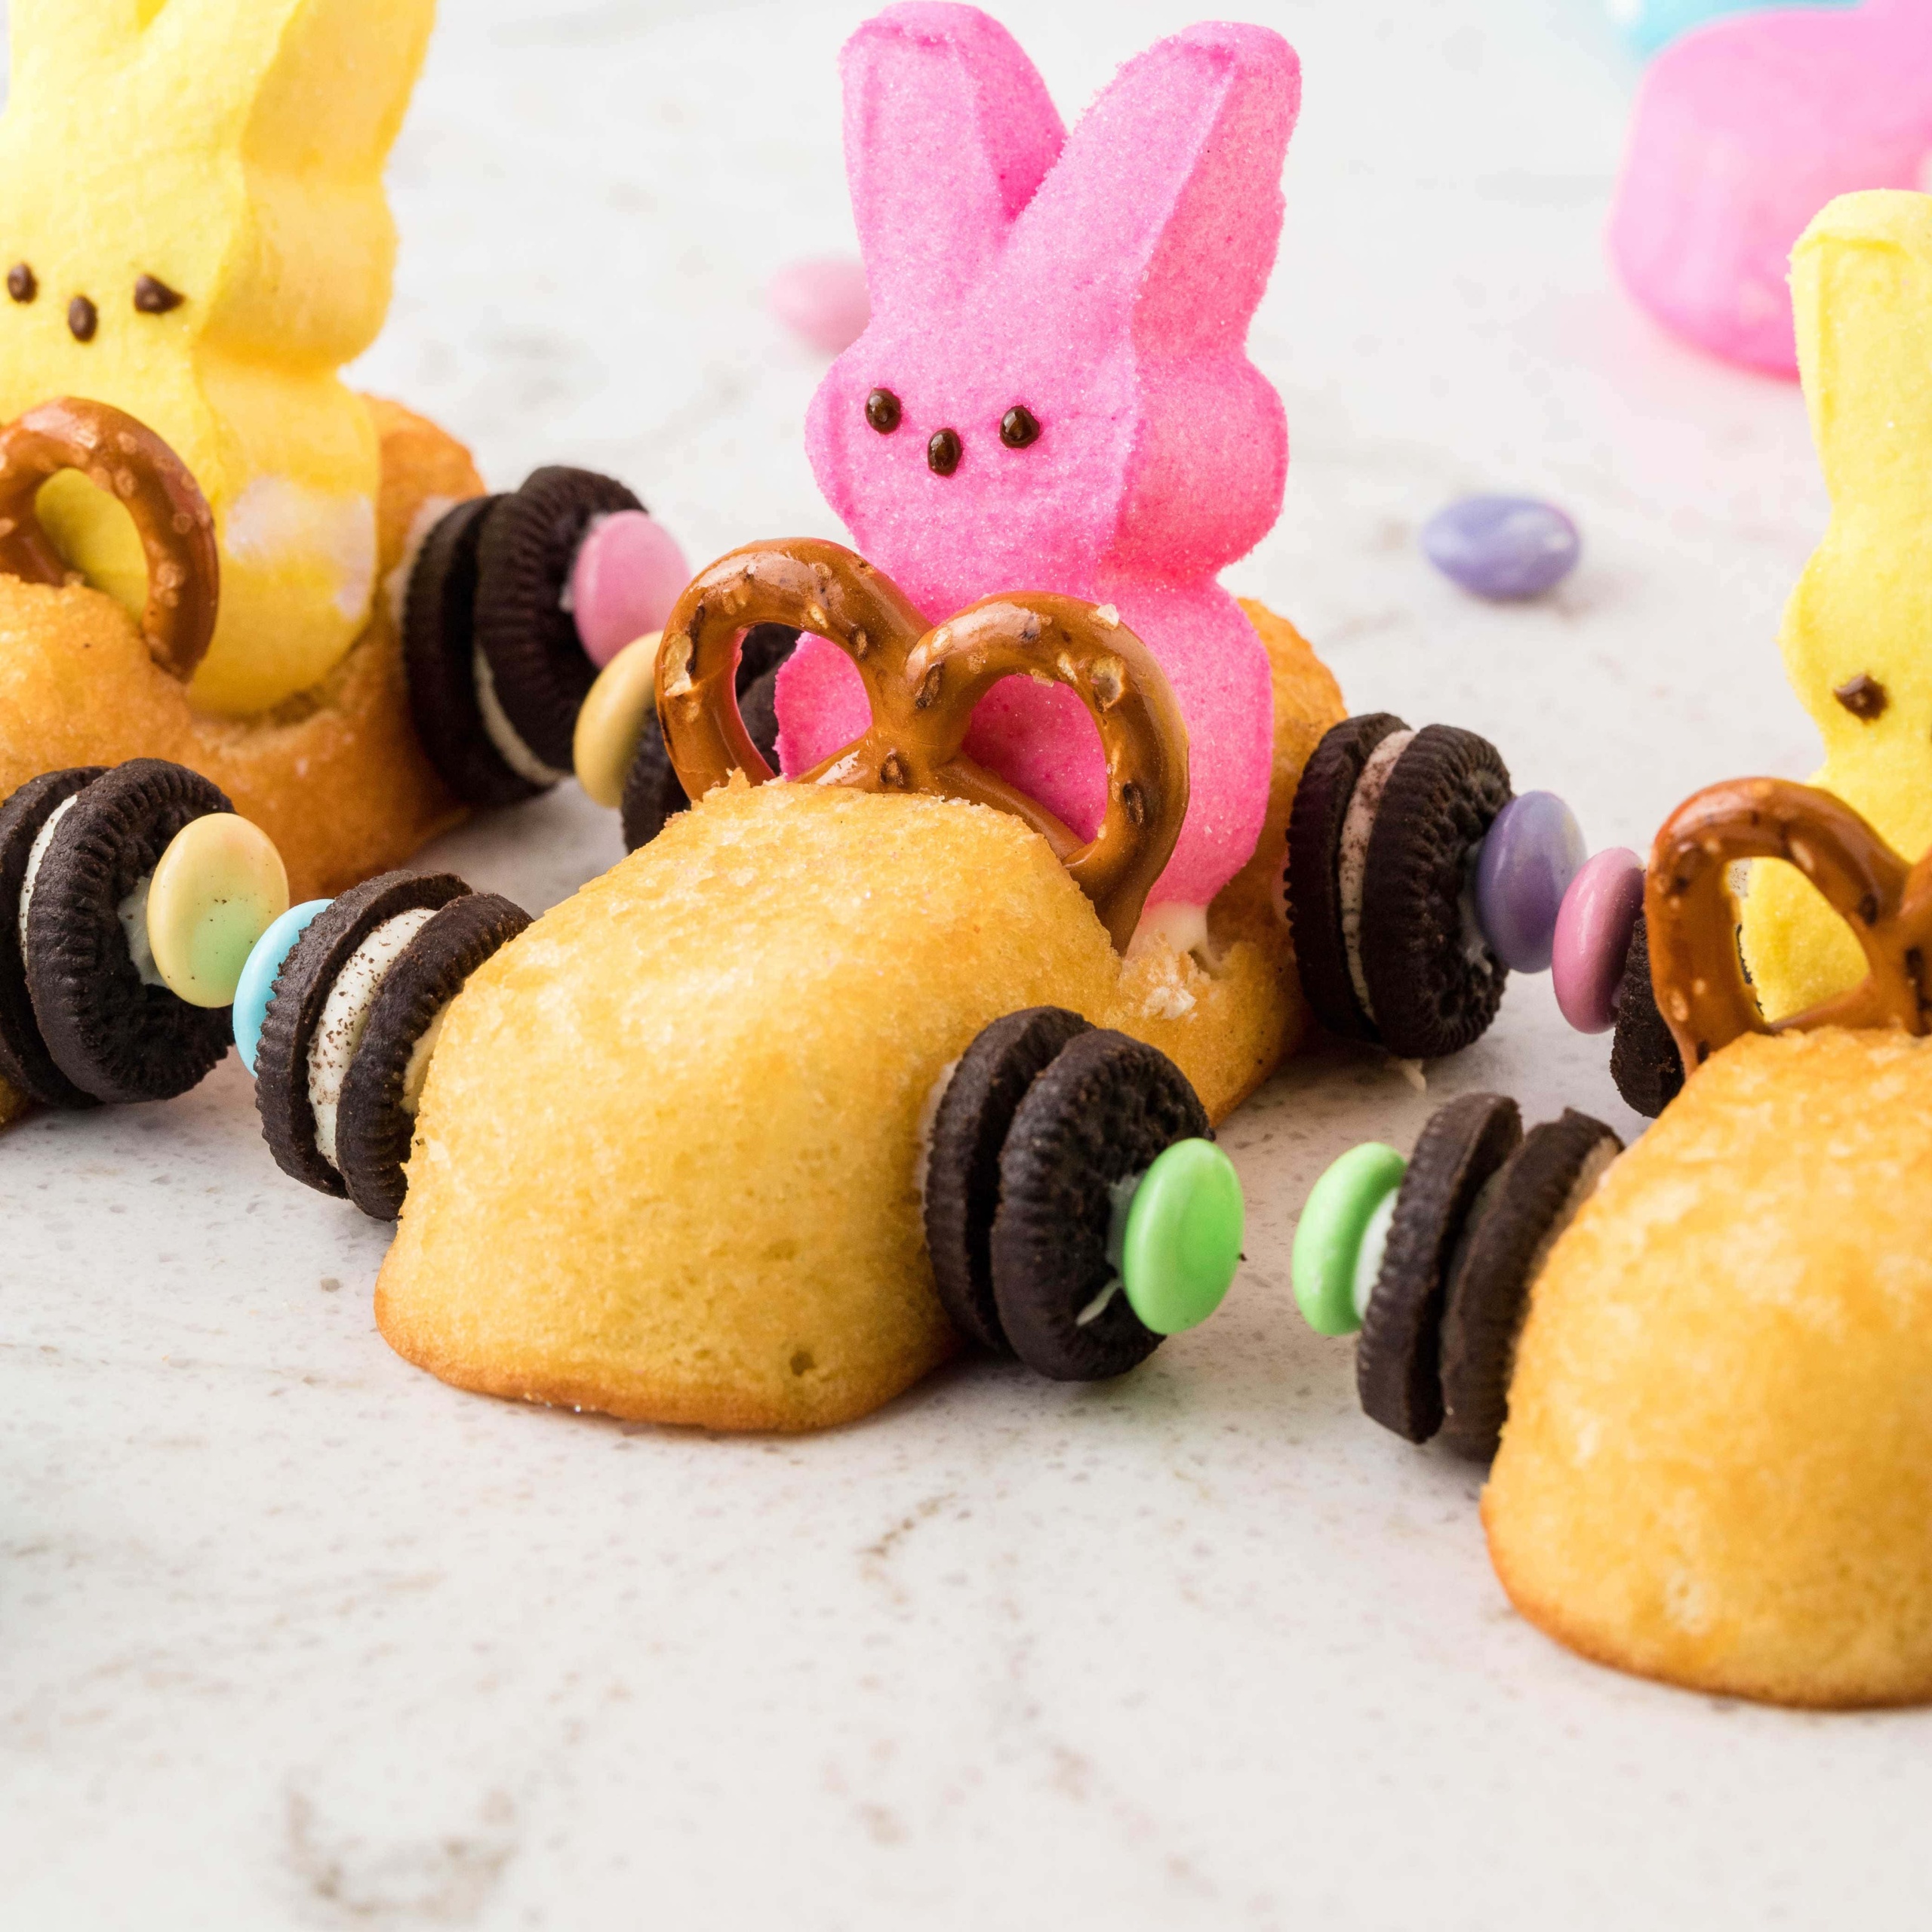 Twinkie bunny cars